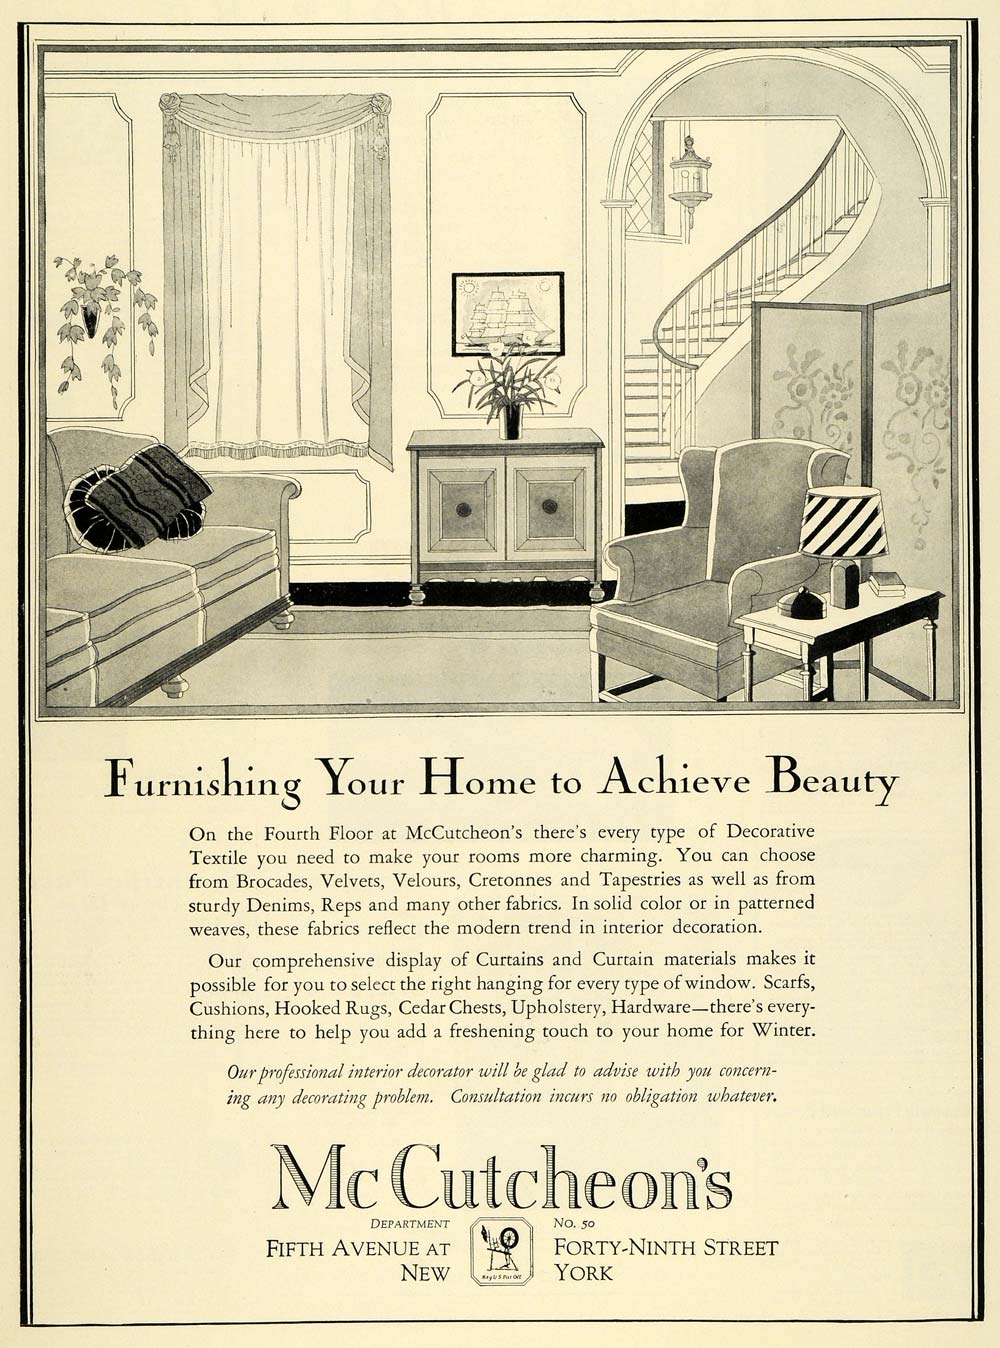 1926 Ad McCutcheon's Decorative Textile Home Decorate - ORIGINAL THB1